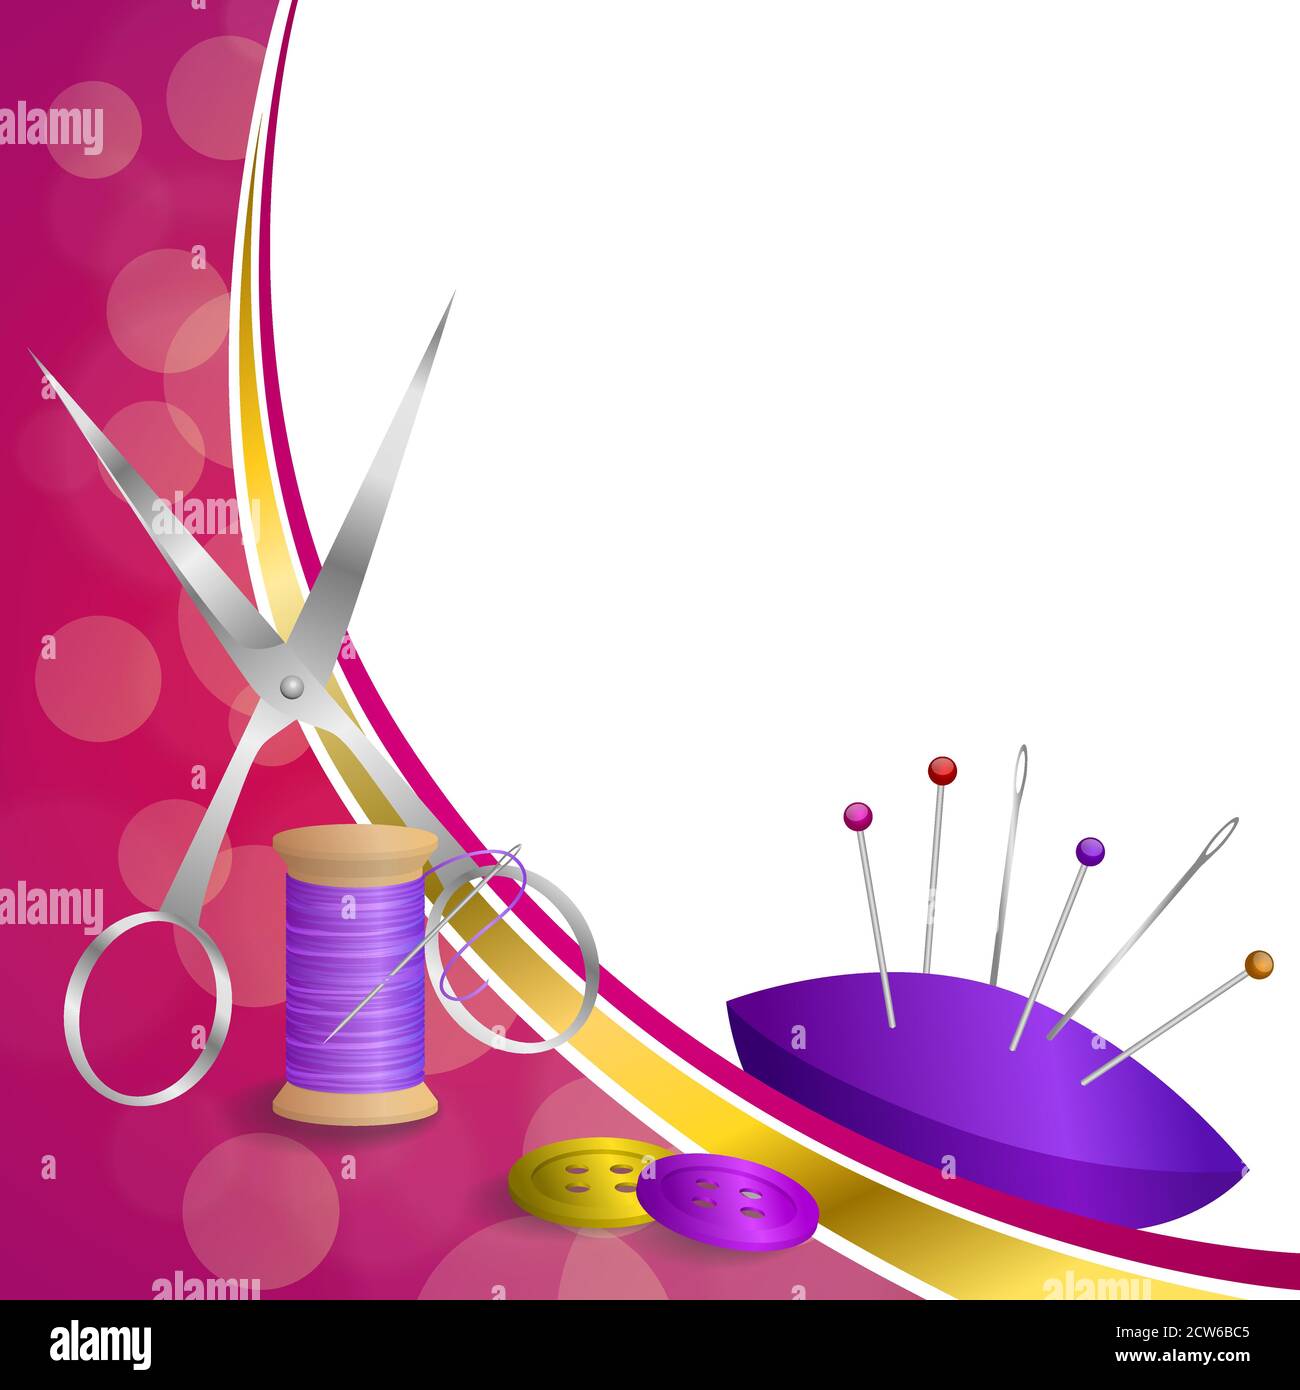 Arrière-plan résumé équipement de fil à coudre ciseaux bouton aiguille broche rose violet rouge jaune or cadre ruban illustration vecteur Illustration de Vecteur